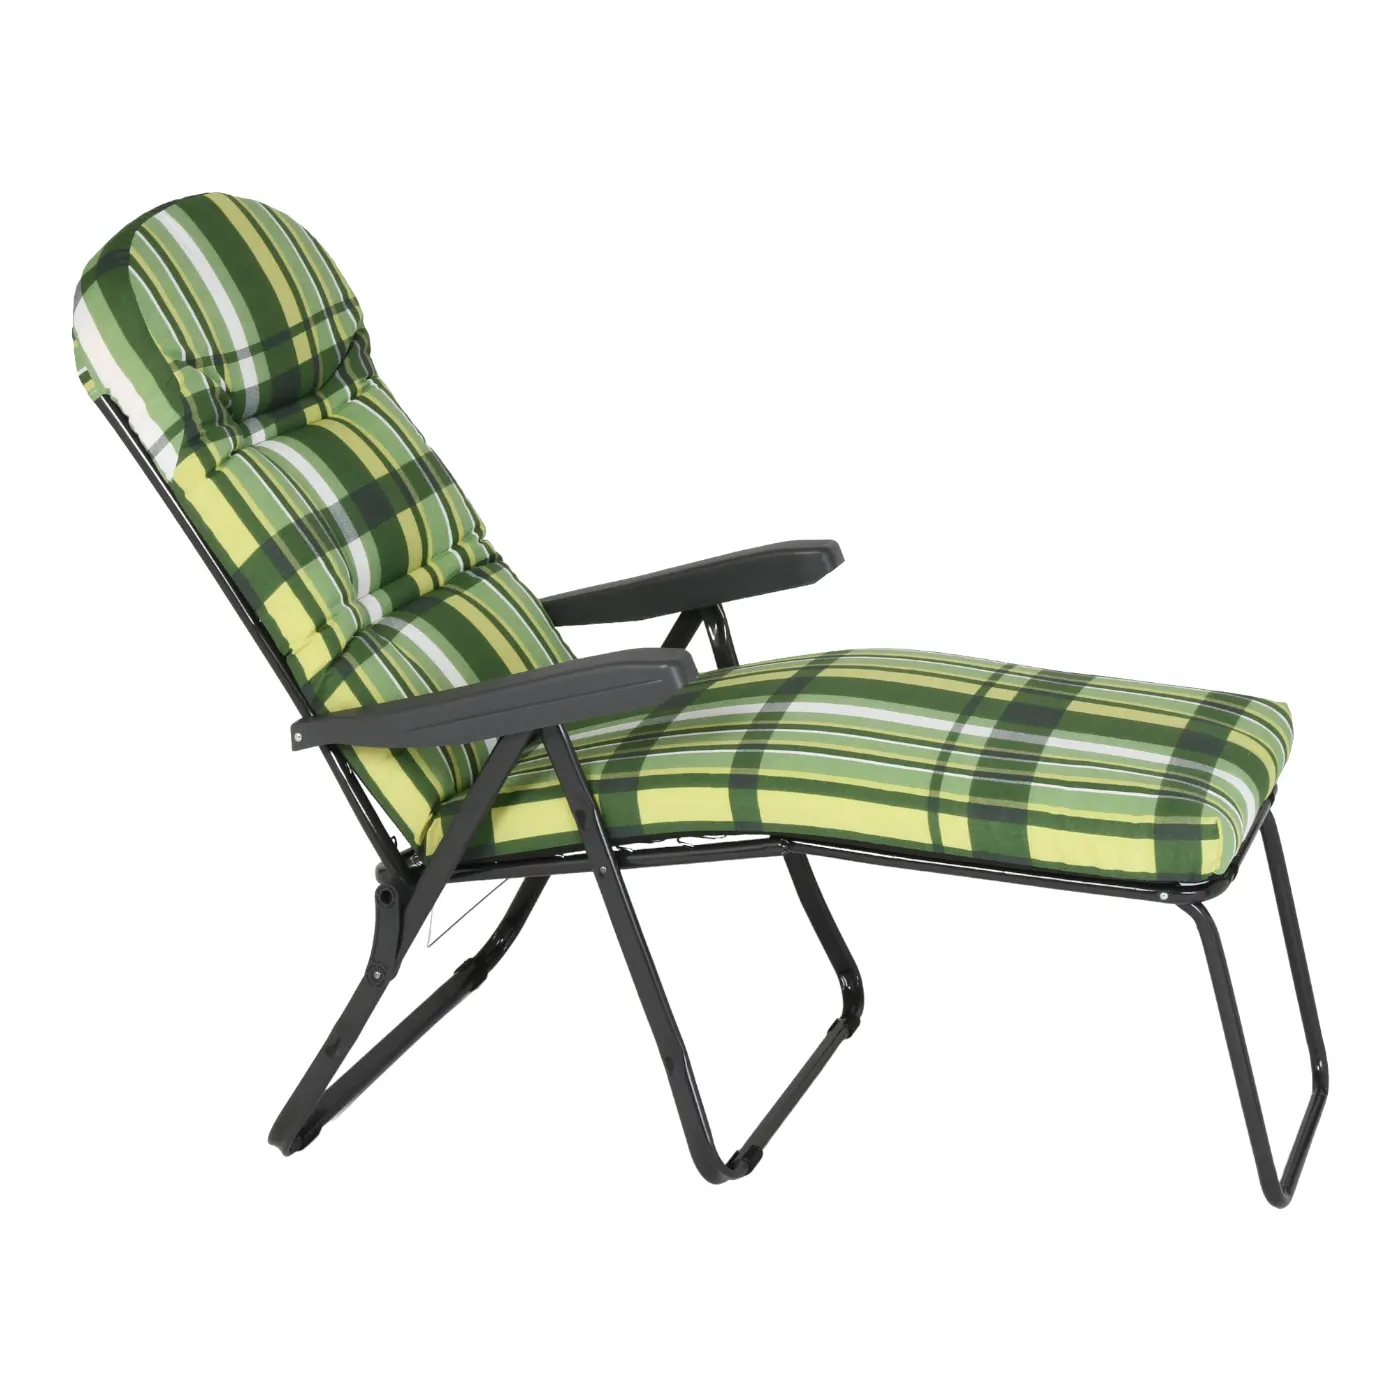 이탈리아에서 만든 좋은 품질의 안락 의자 공급 업체 유럽 디자인 스타일 야외 용 내구성 안락 의자